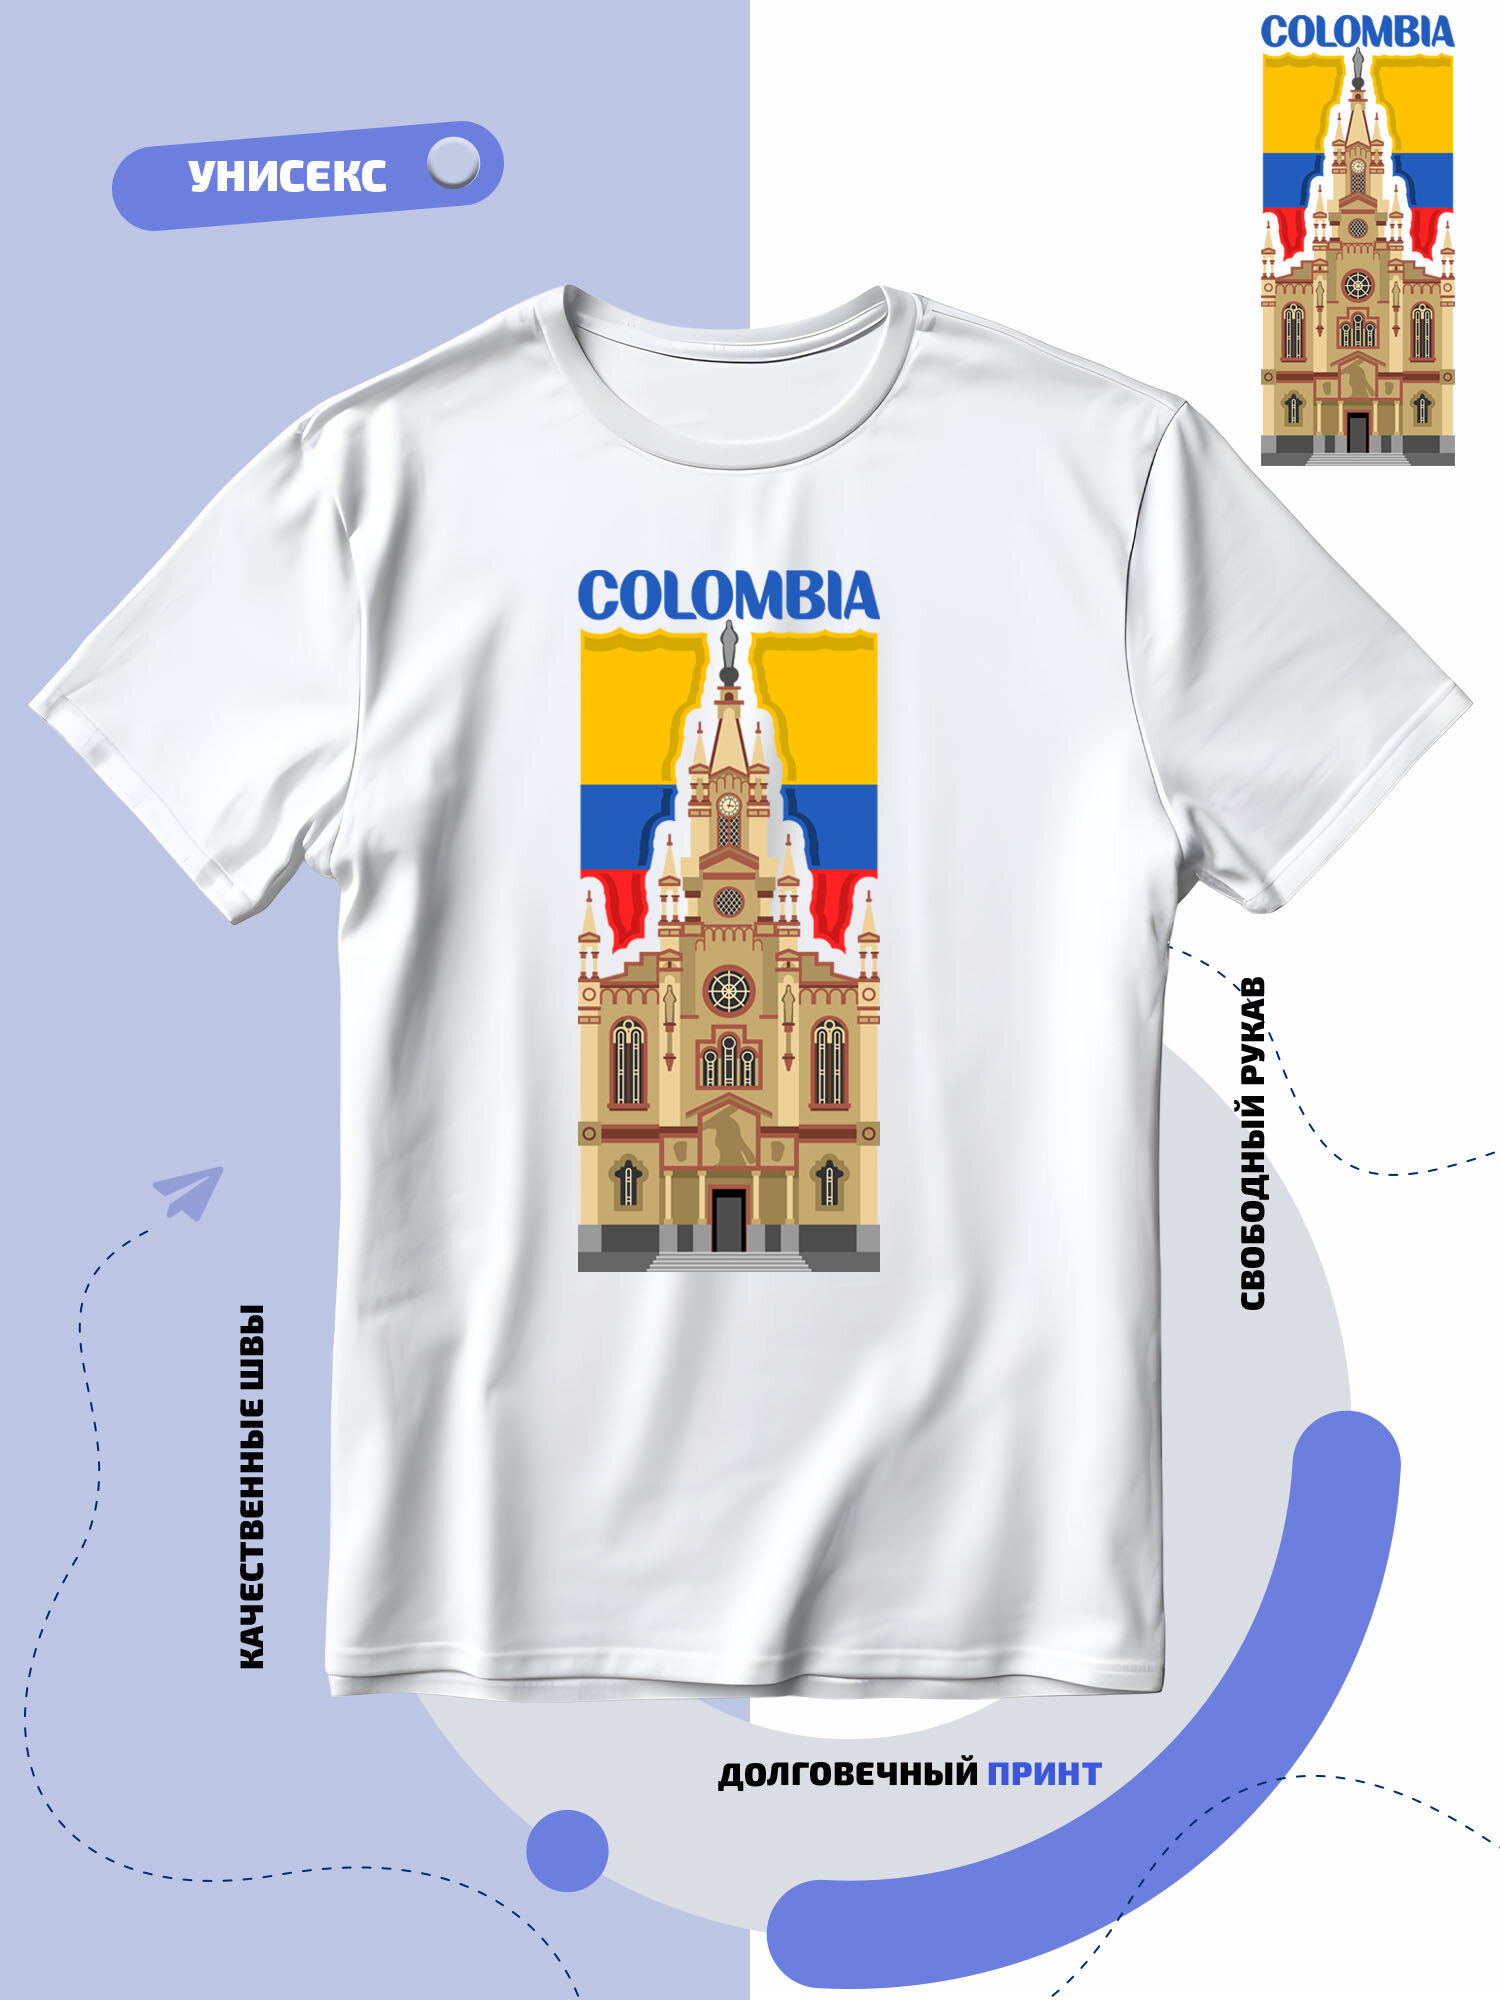 Футболка SMAIL-P флаг Колумбии-Colombia и достопримечательность